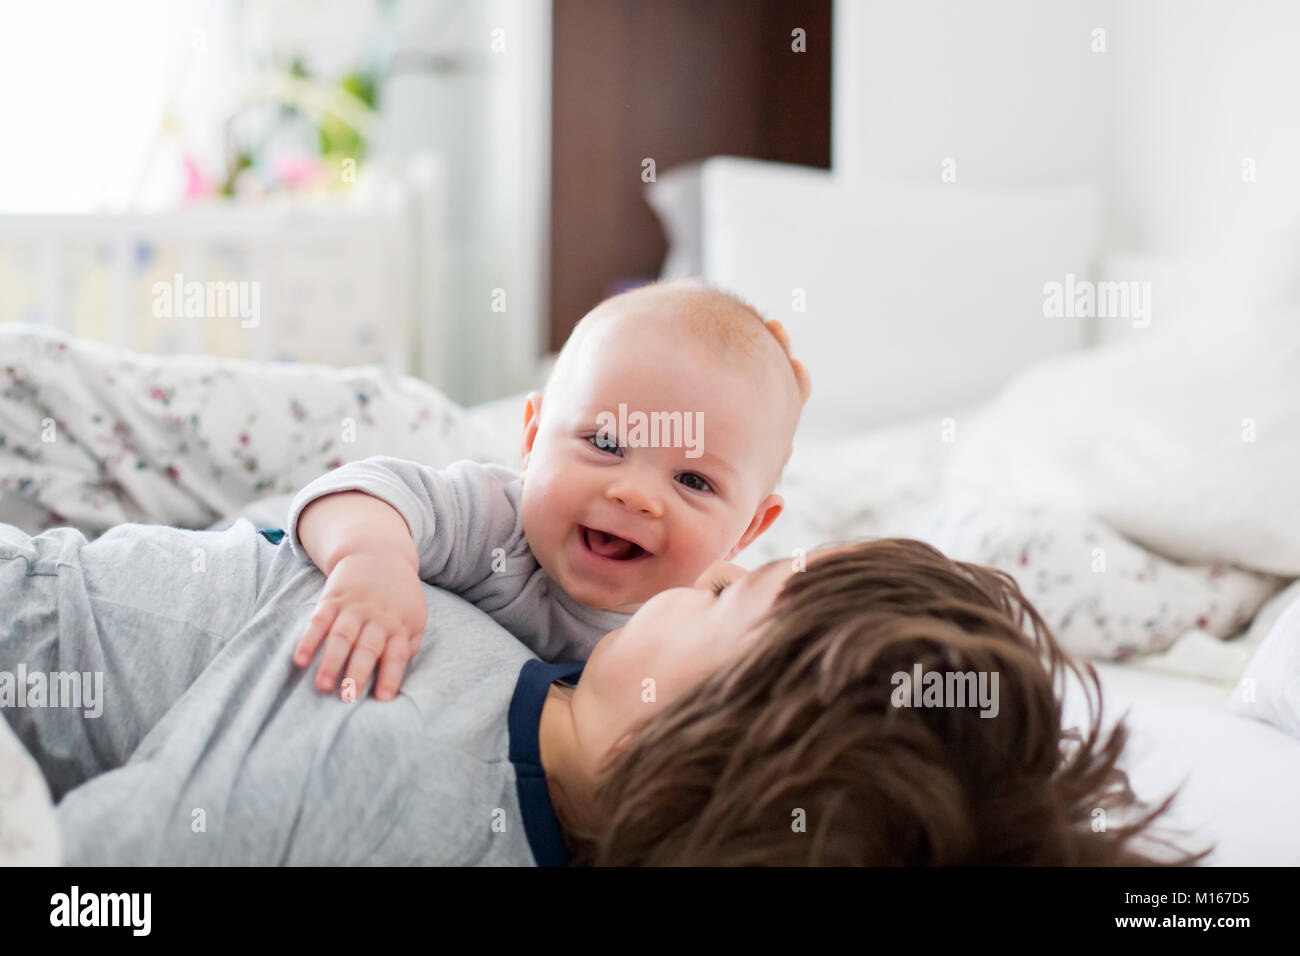 Zwei Kinder, Baby und sein älterer Bruder im Bett am Morgen, gemeinsam spielen, lachen und eine gute Zeit, die gemeinsame Nutzung von speziellen Moment, Kleben Stockfoto